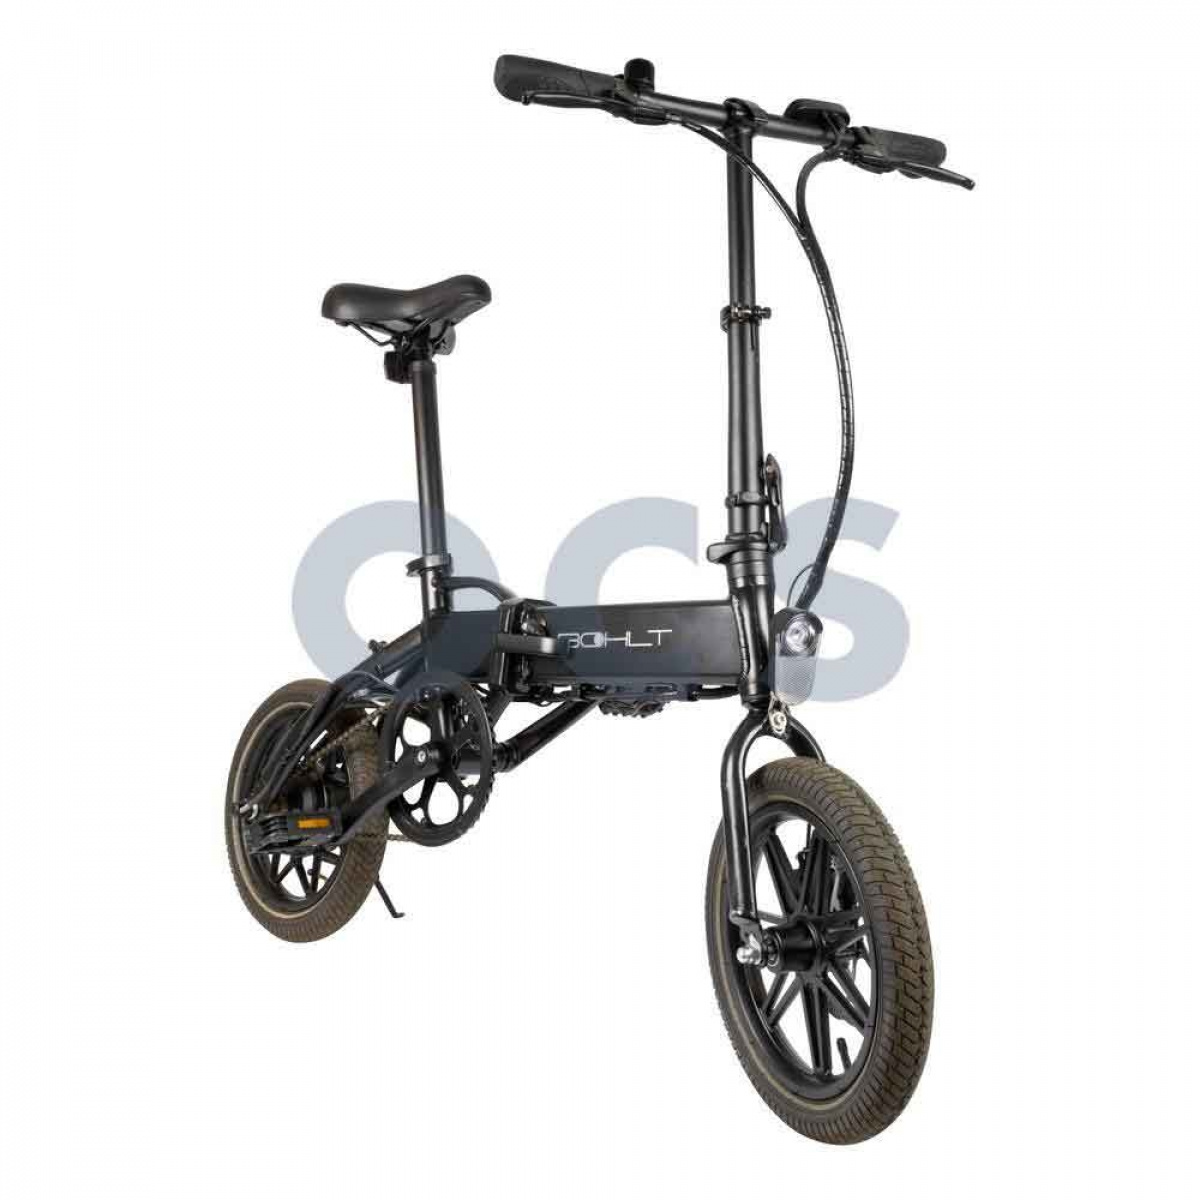 Bohlt elcykel R140 14 tommer i gruppen Outdoor / Cykler hos Campmarket (69848)